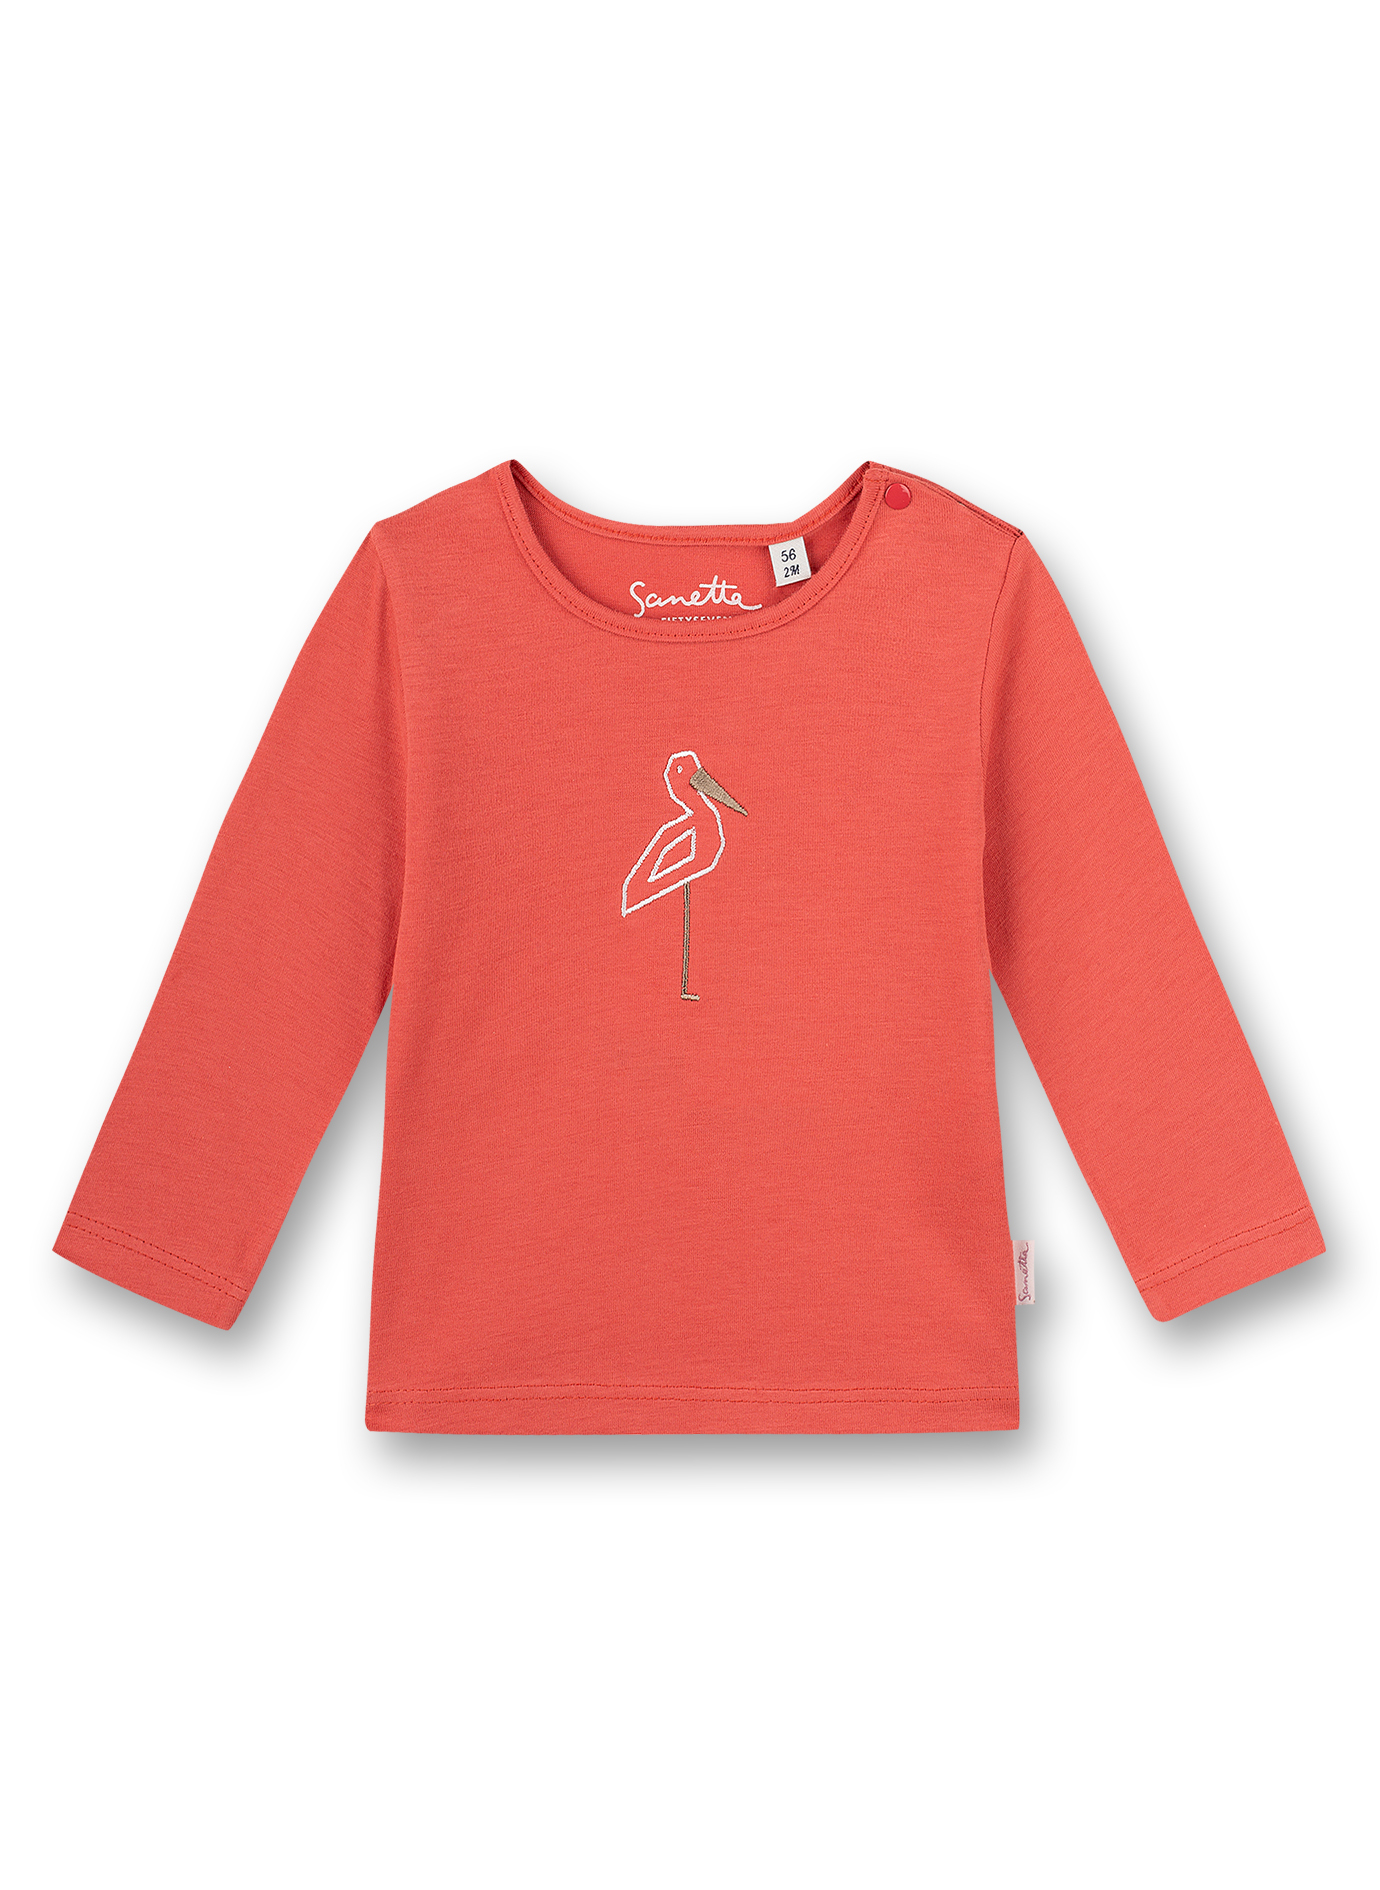 Mädchen-Shirt langarm Rot Family Stork